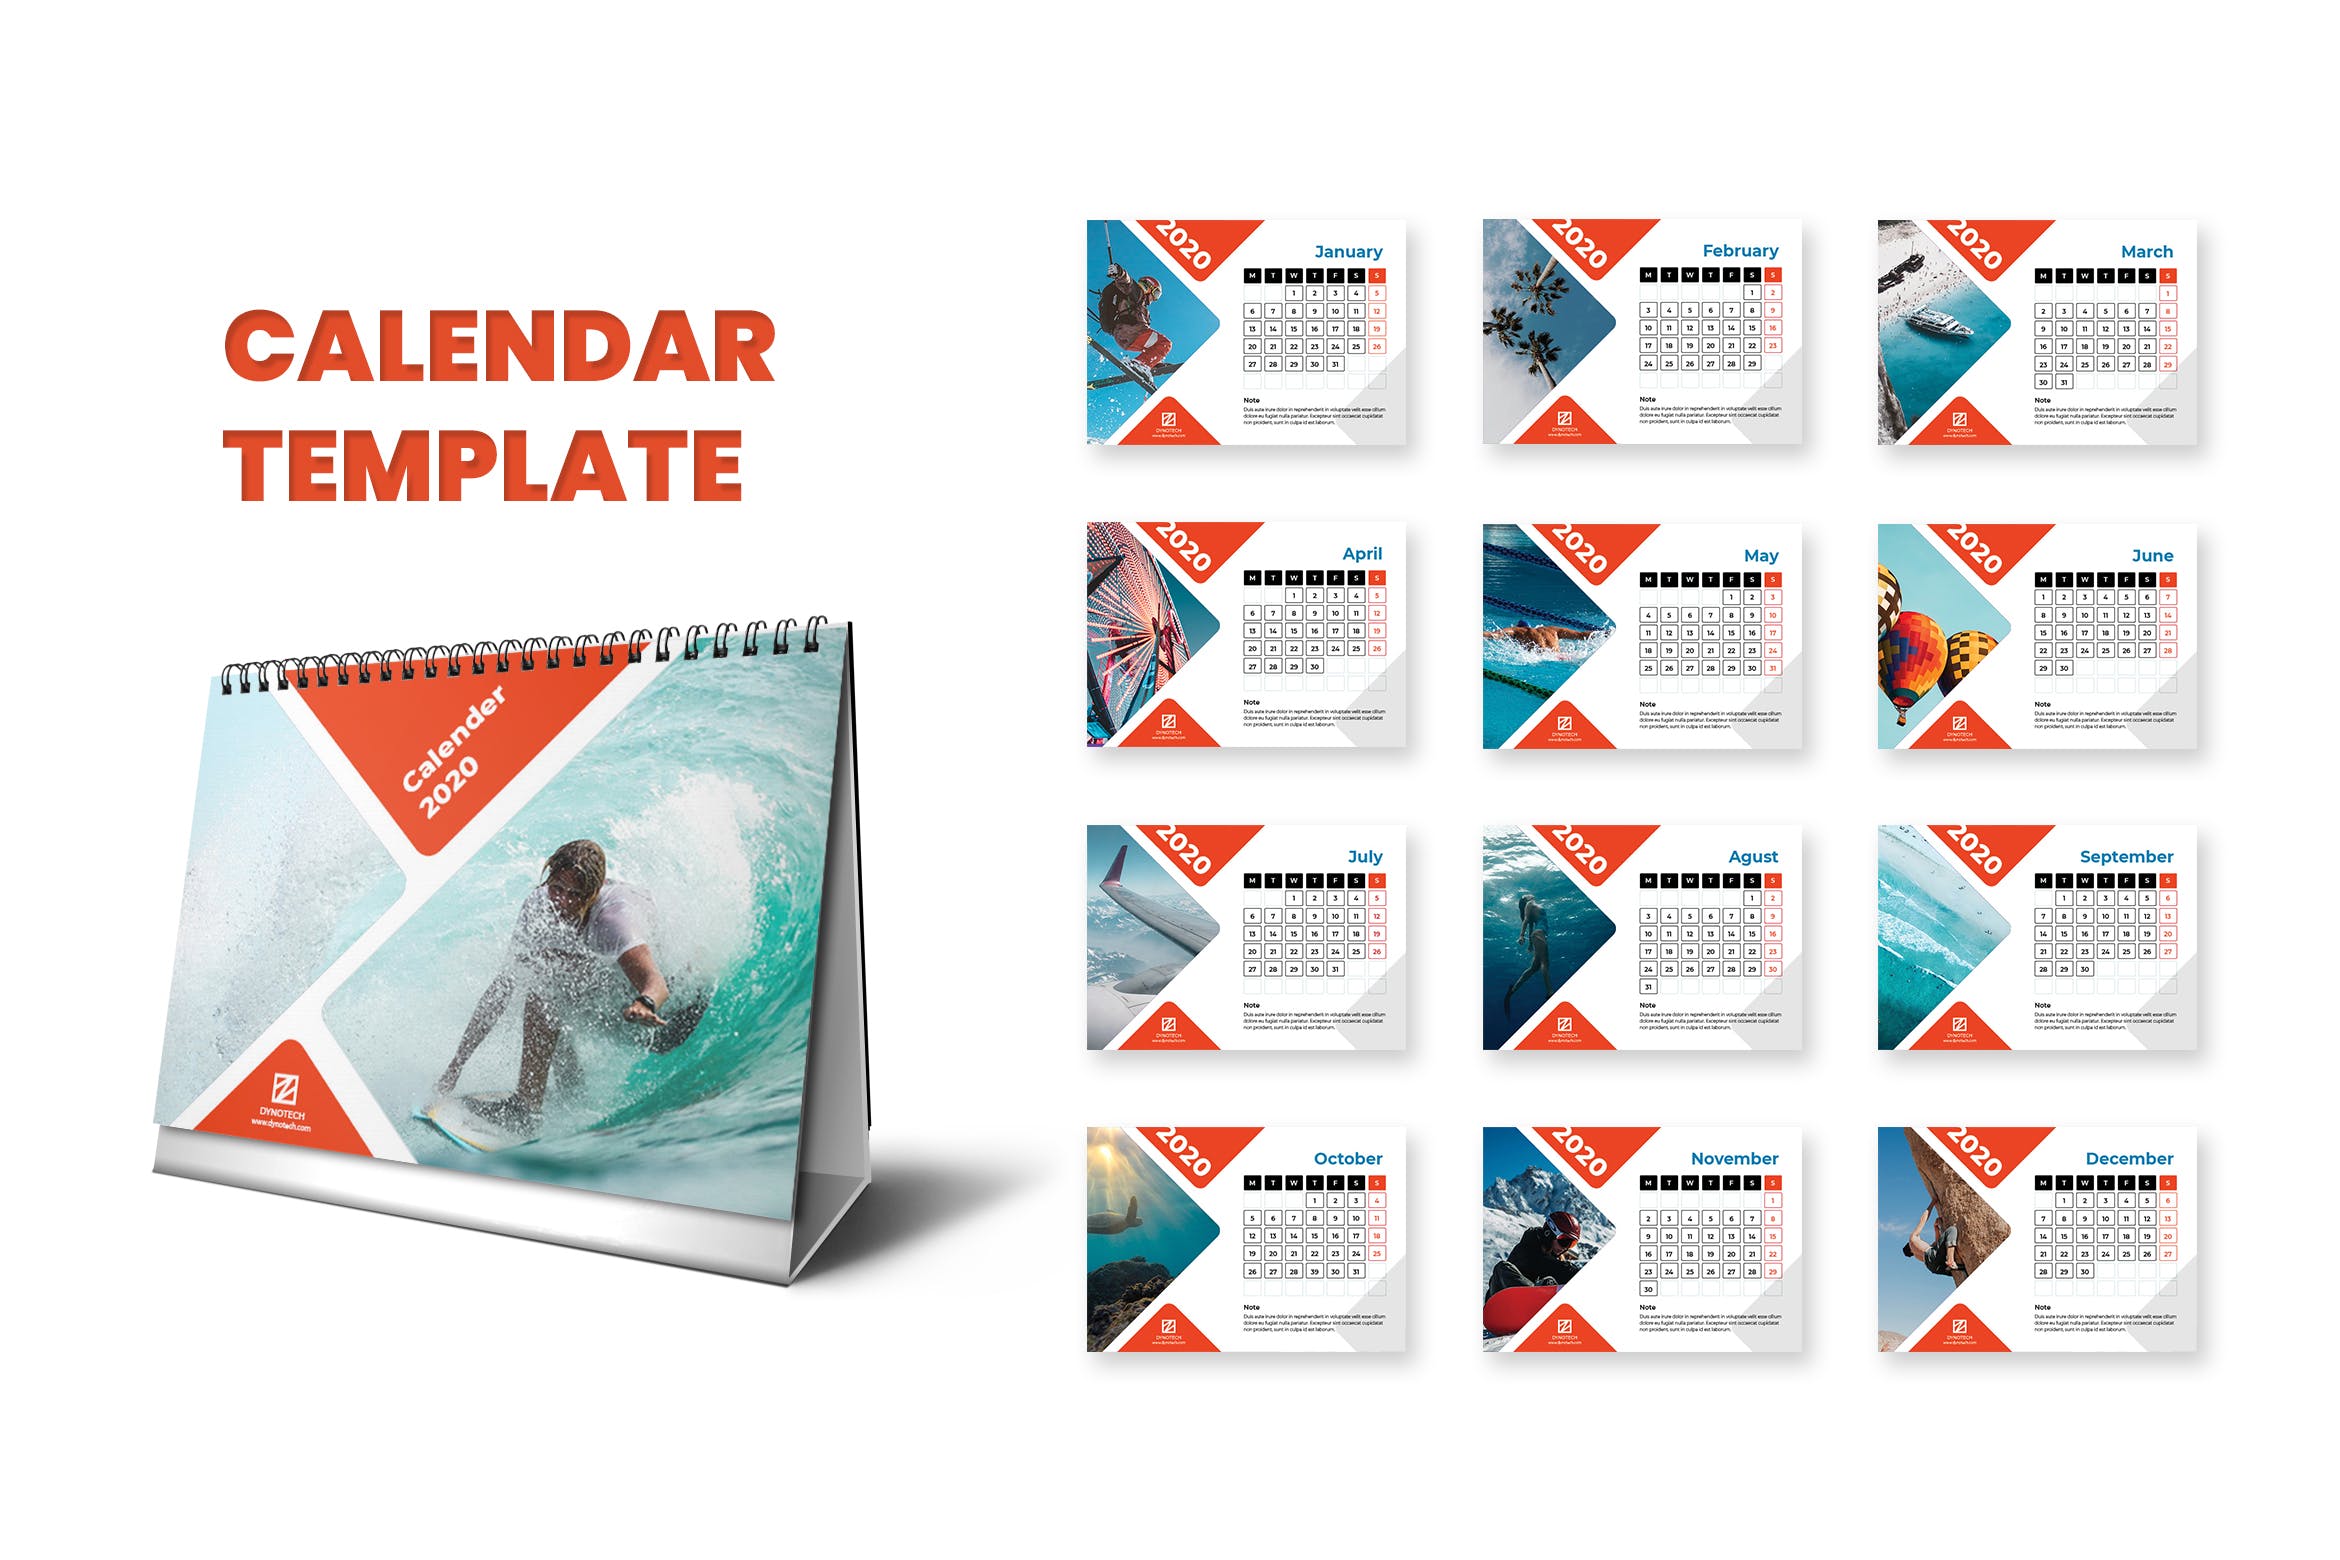 2020年极限运动主题台历定制排版设计模板 Calendar 2020插图